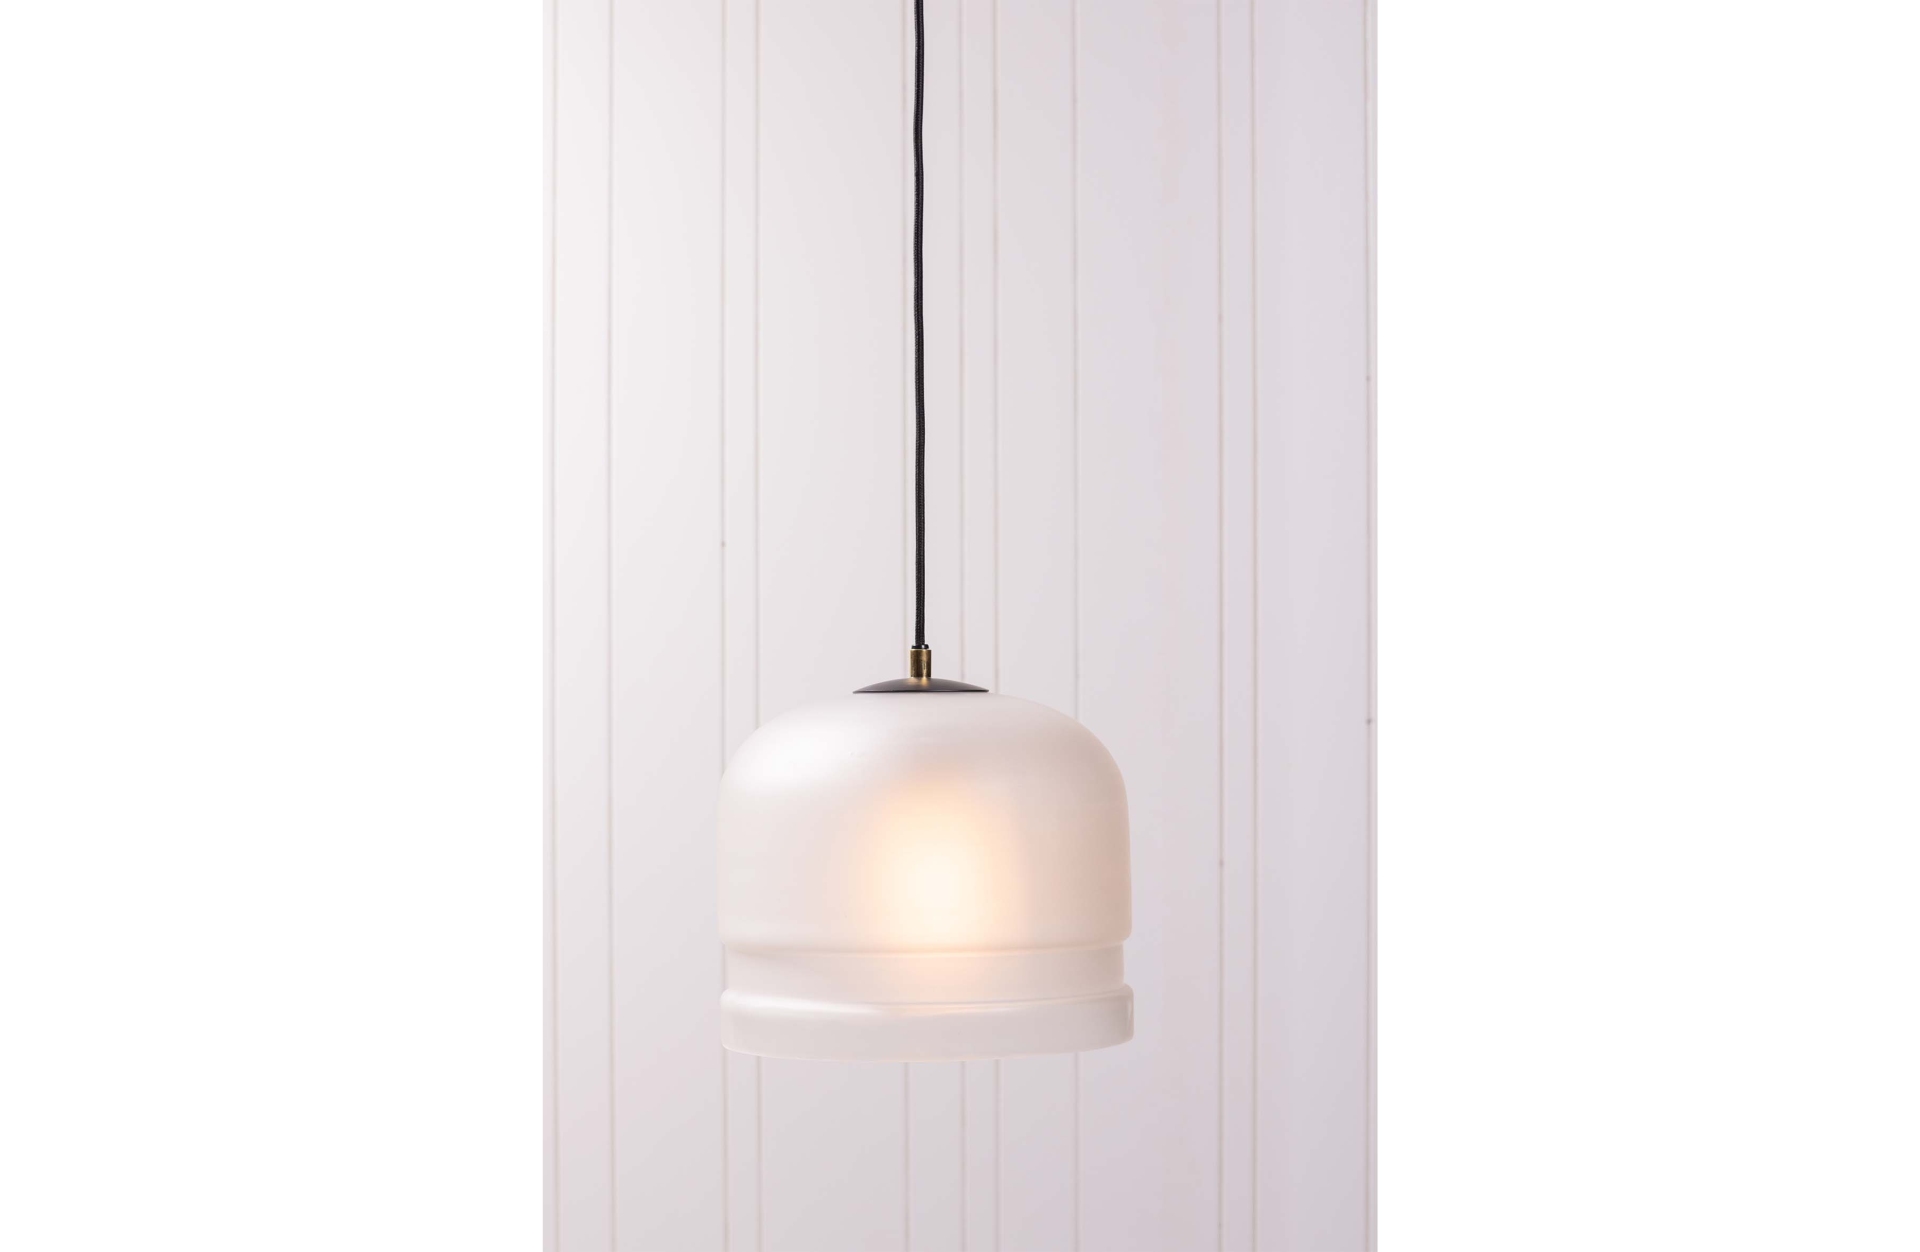 Die klassische Lampe Micah überzeugt mit ihrem schlichten auftreten. Gefertigt wurde sie aus Metall und Glas, welches in einem weißen Farbton ist.